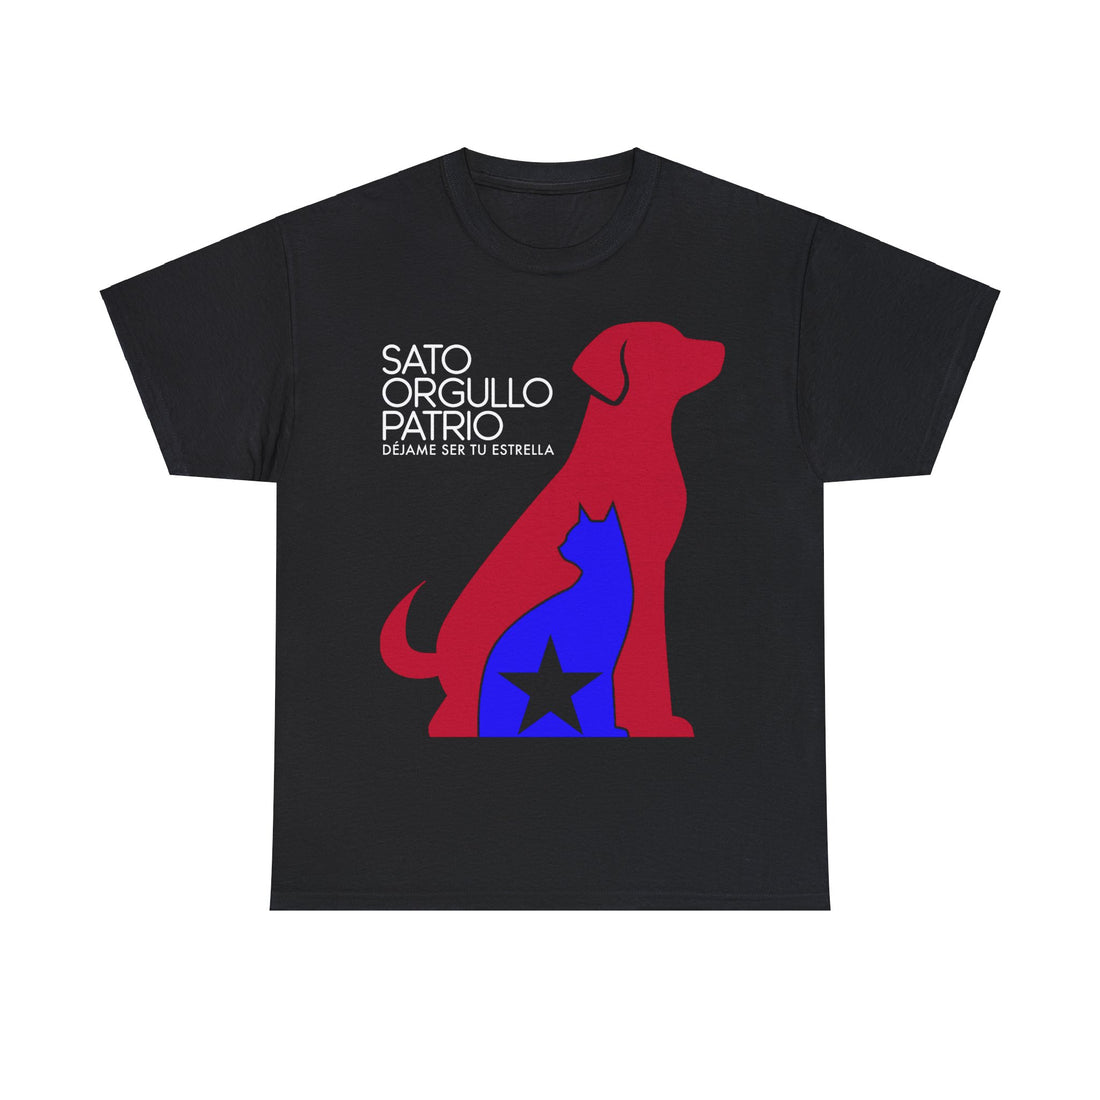 Sato Orgullo Patrio - Camiseta con logo